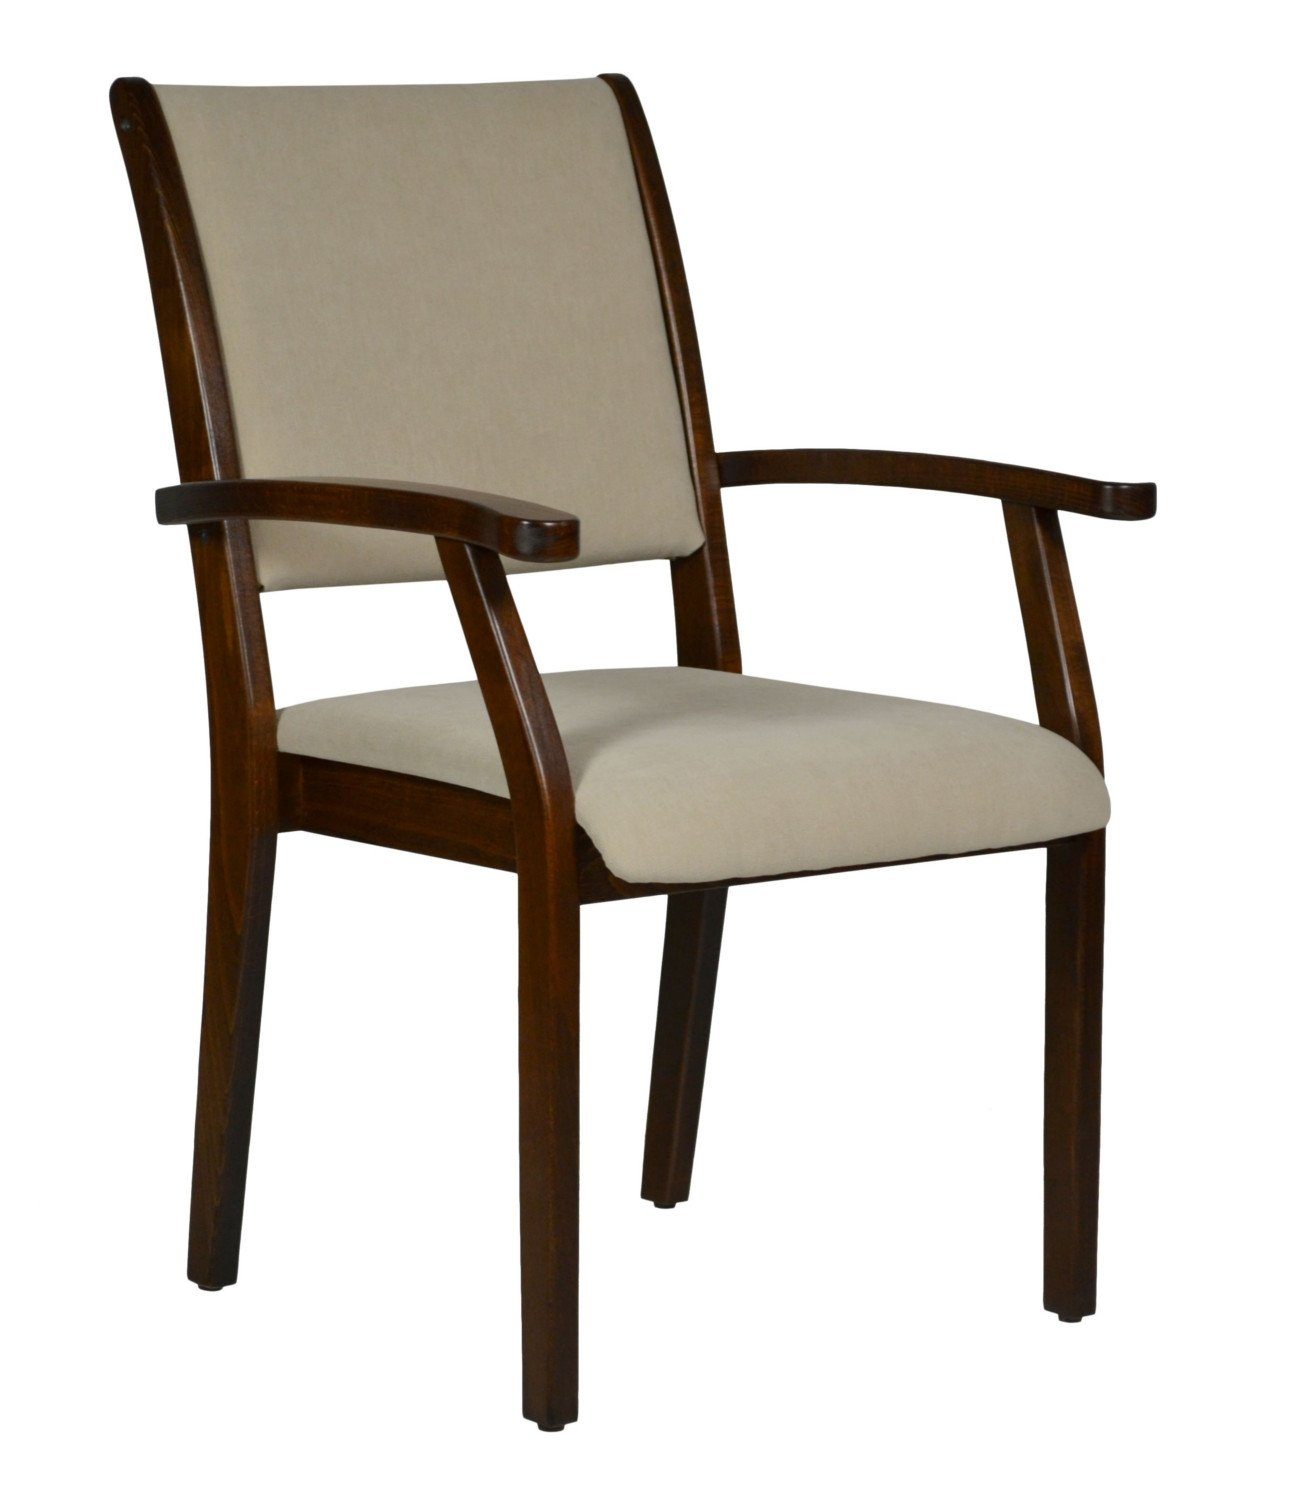 Devita Stuhl Seniorenstuhl Pflegestuhl Kerry - Verschiedene Sitzhöhen (Einzel), stapelbar, standfest, verschieden Sitzhöhe wählbar, versch. Bezüge wählbar DB14 Microfaser Sand